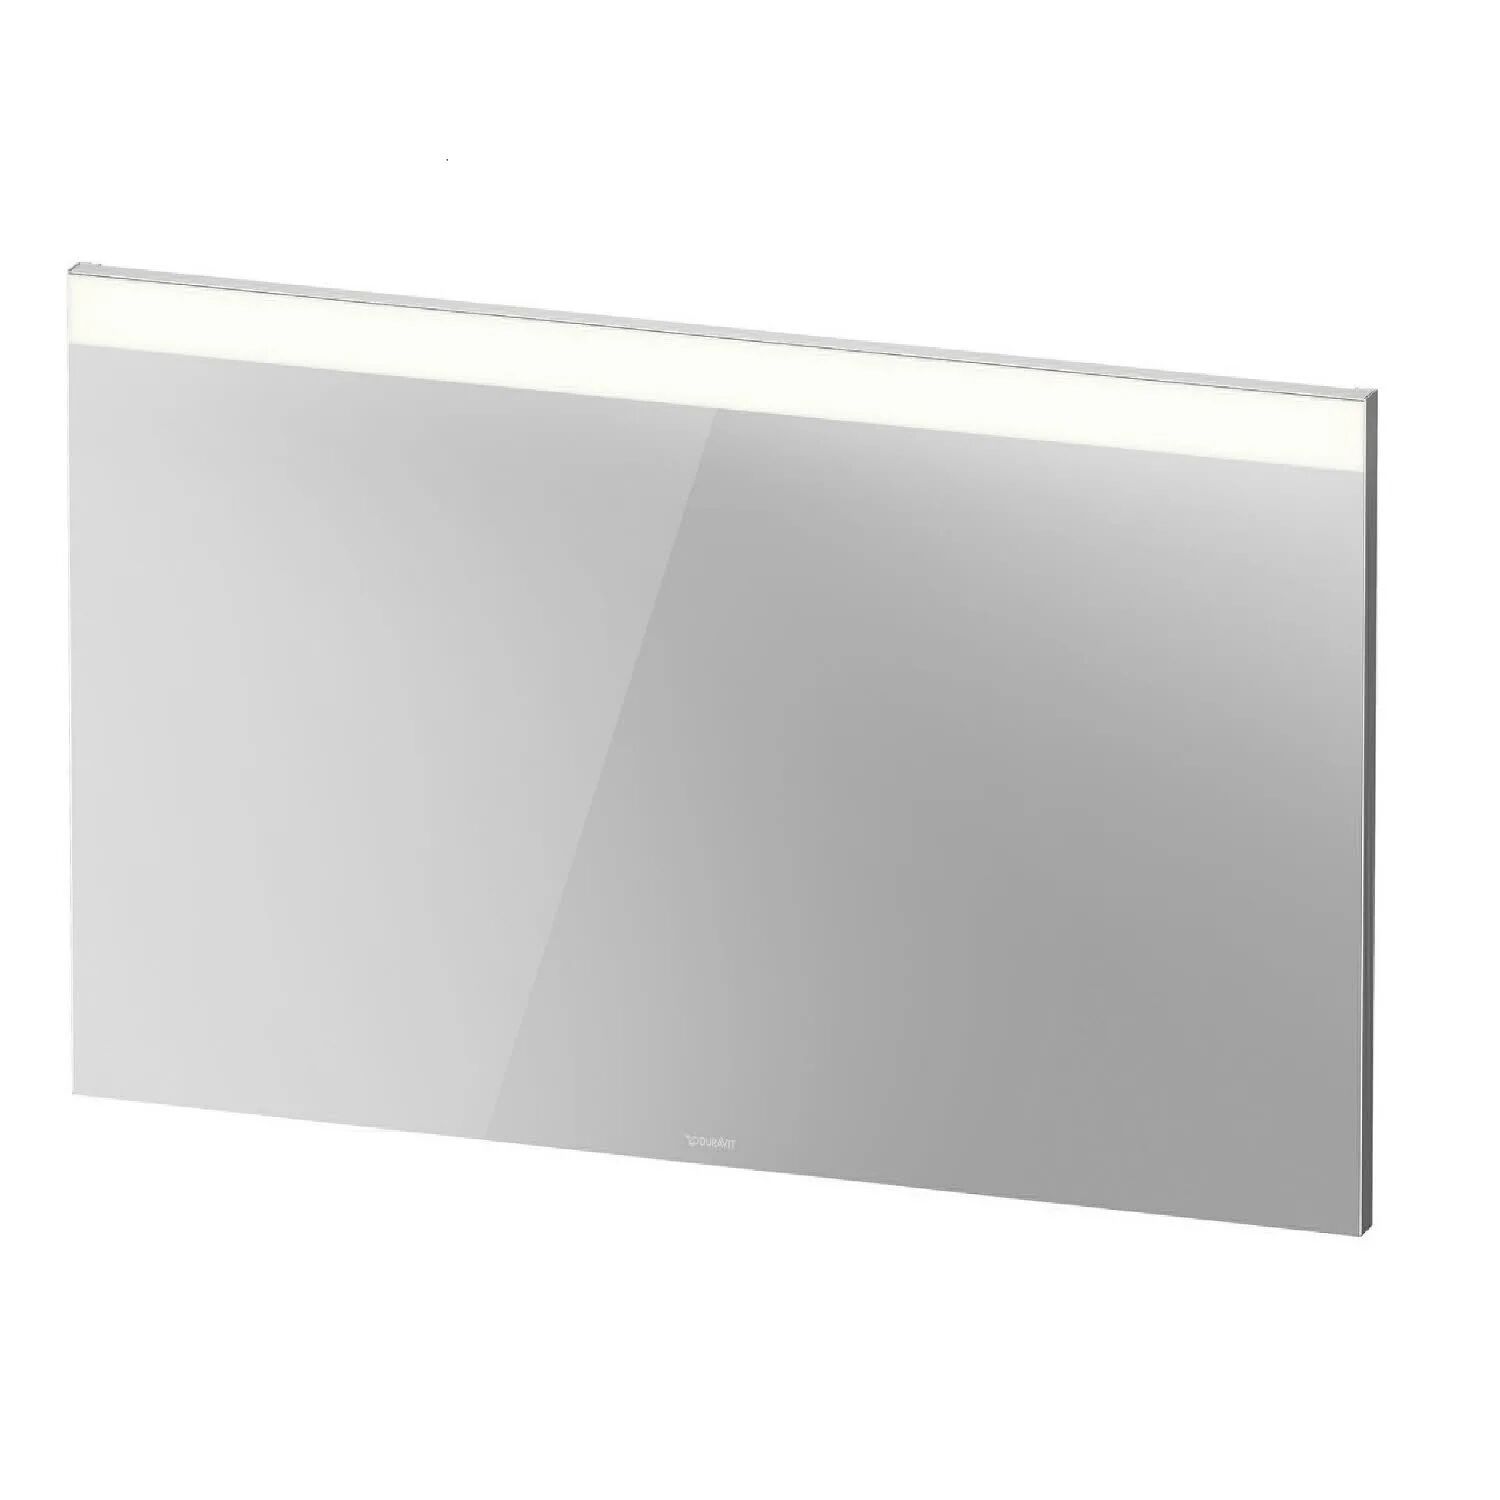 Duravit Spiegel Best Version mit Beleuchtung oben und Spiegelheizung 130 cm Licht und Spiegel B: 130 T: 3,5 H: 70 cm weiß matt LM7859D0000